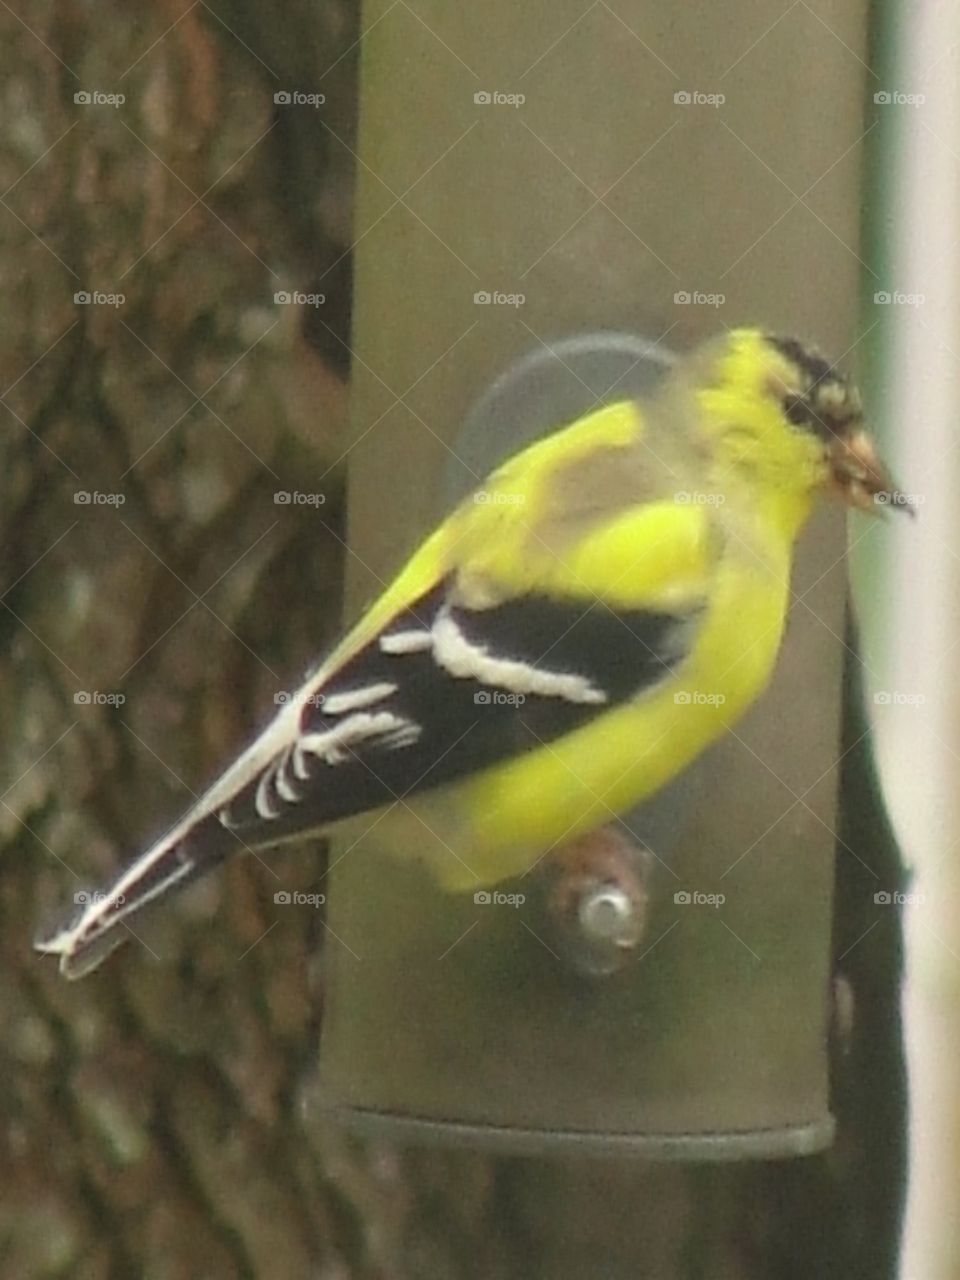 yellow bird